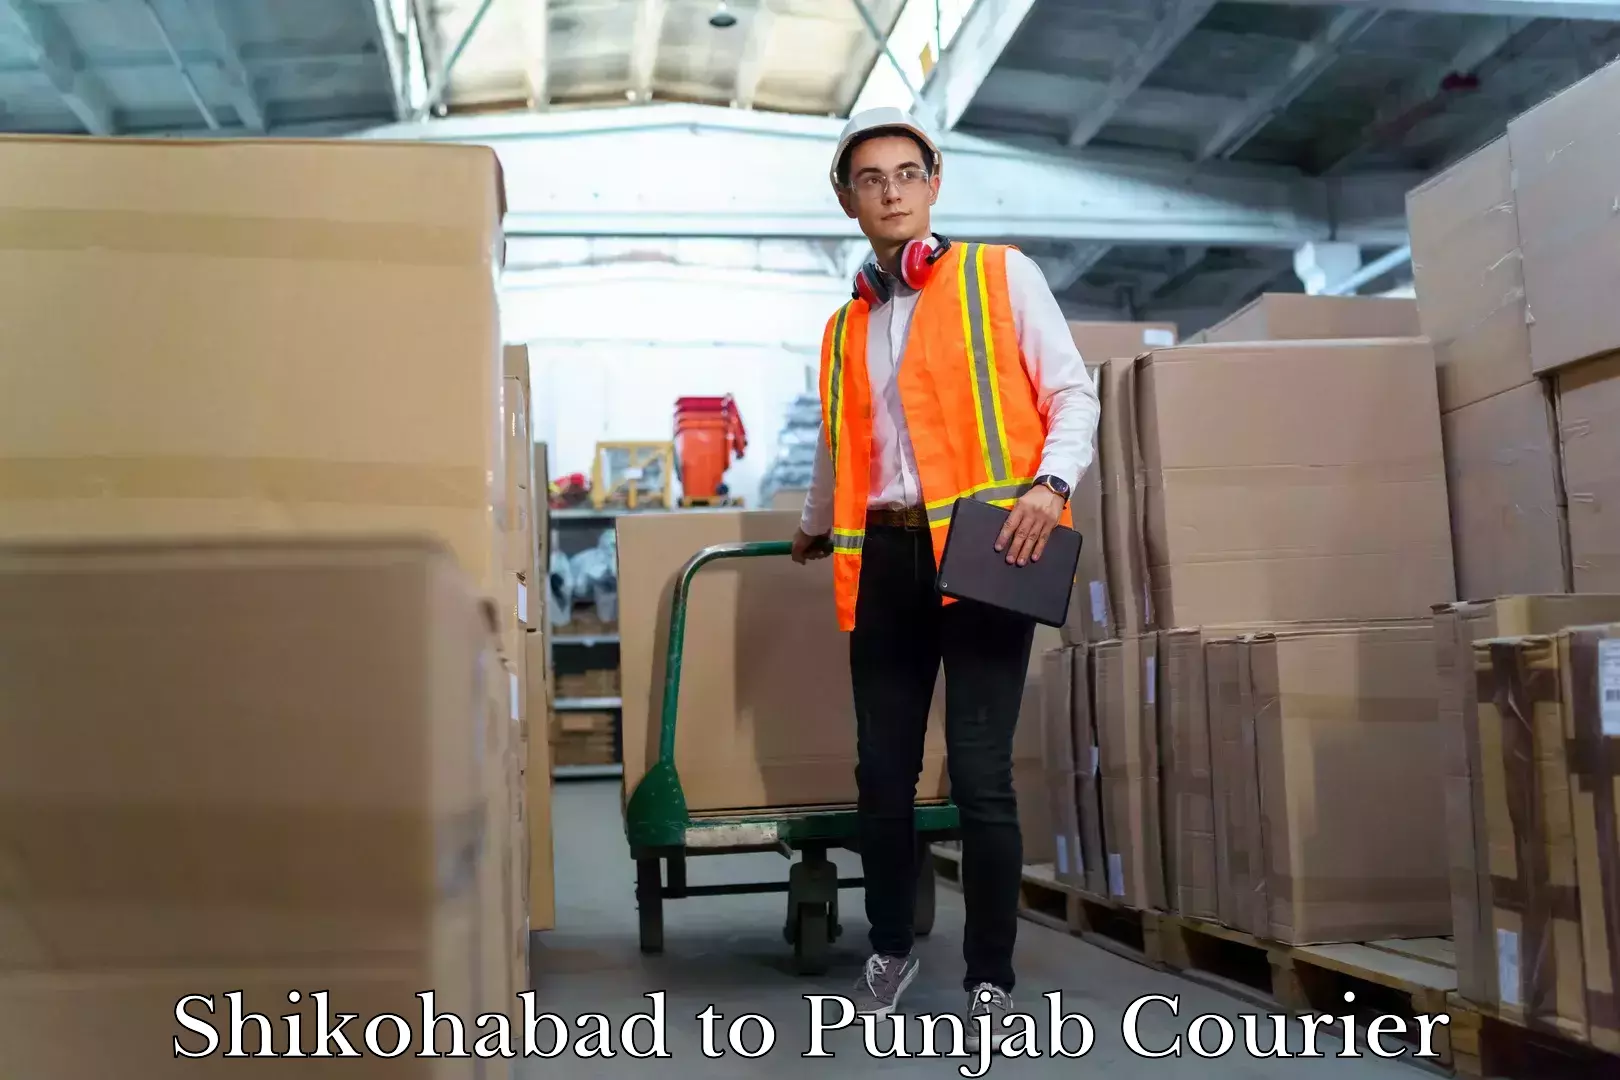 Expert moving and storage Shikohabad to Punjab